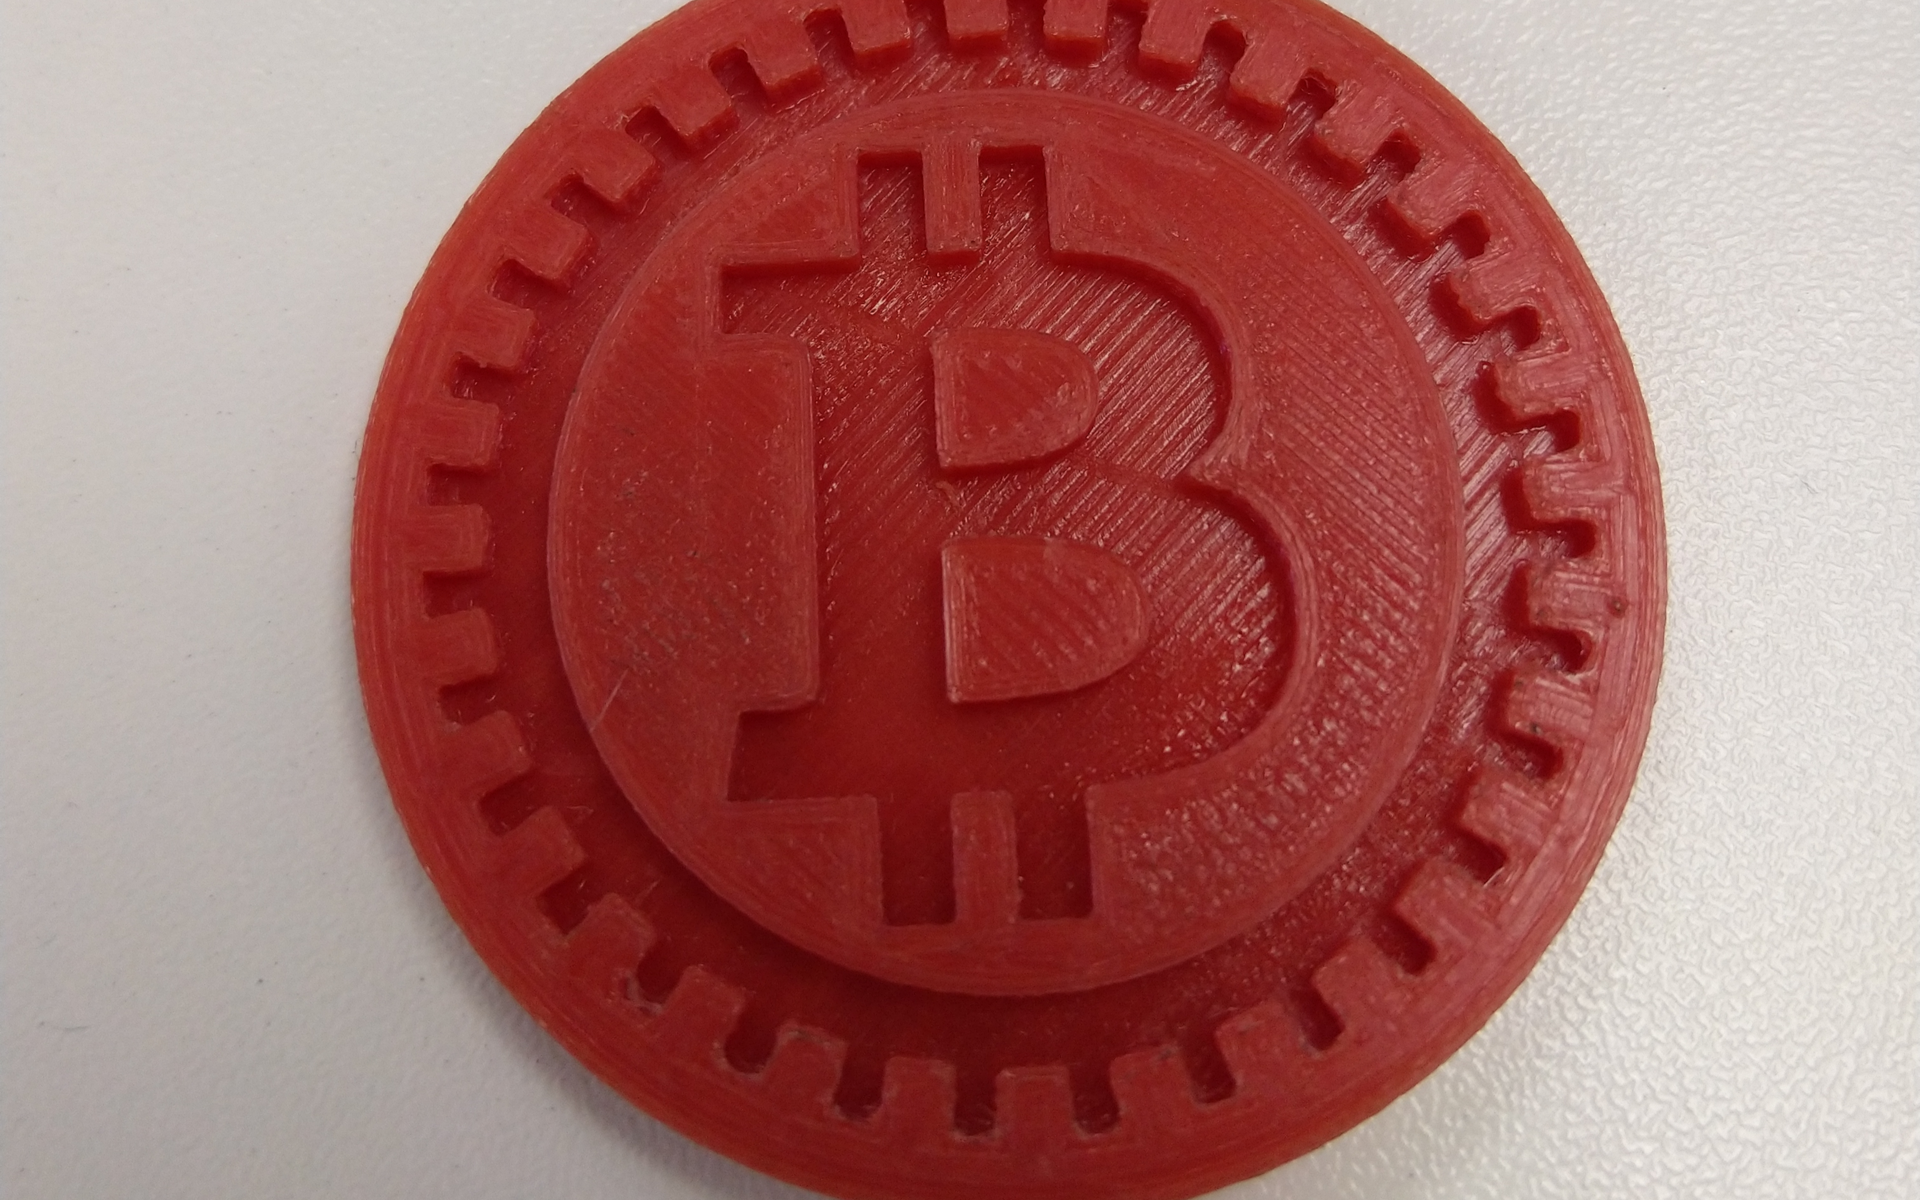 btc2 coinmarketcap